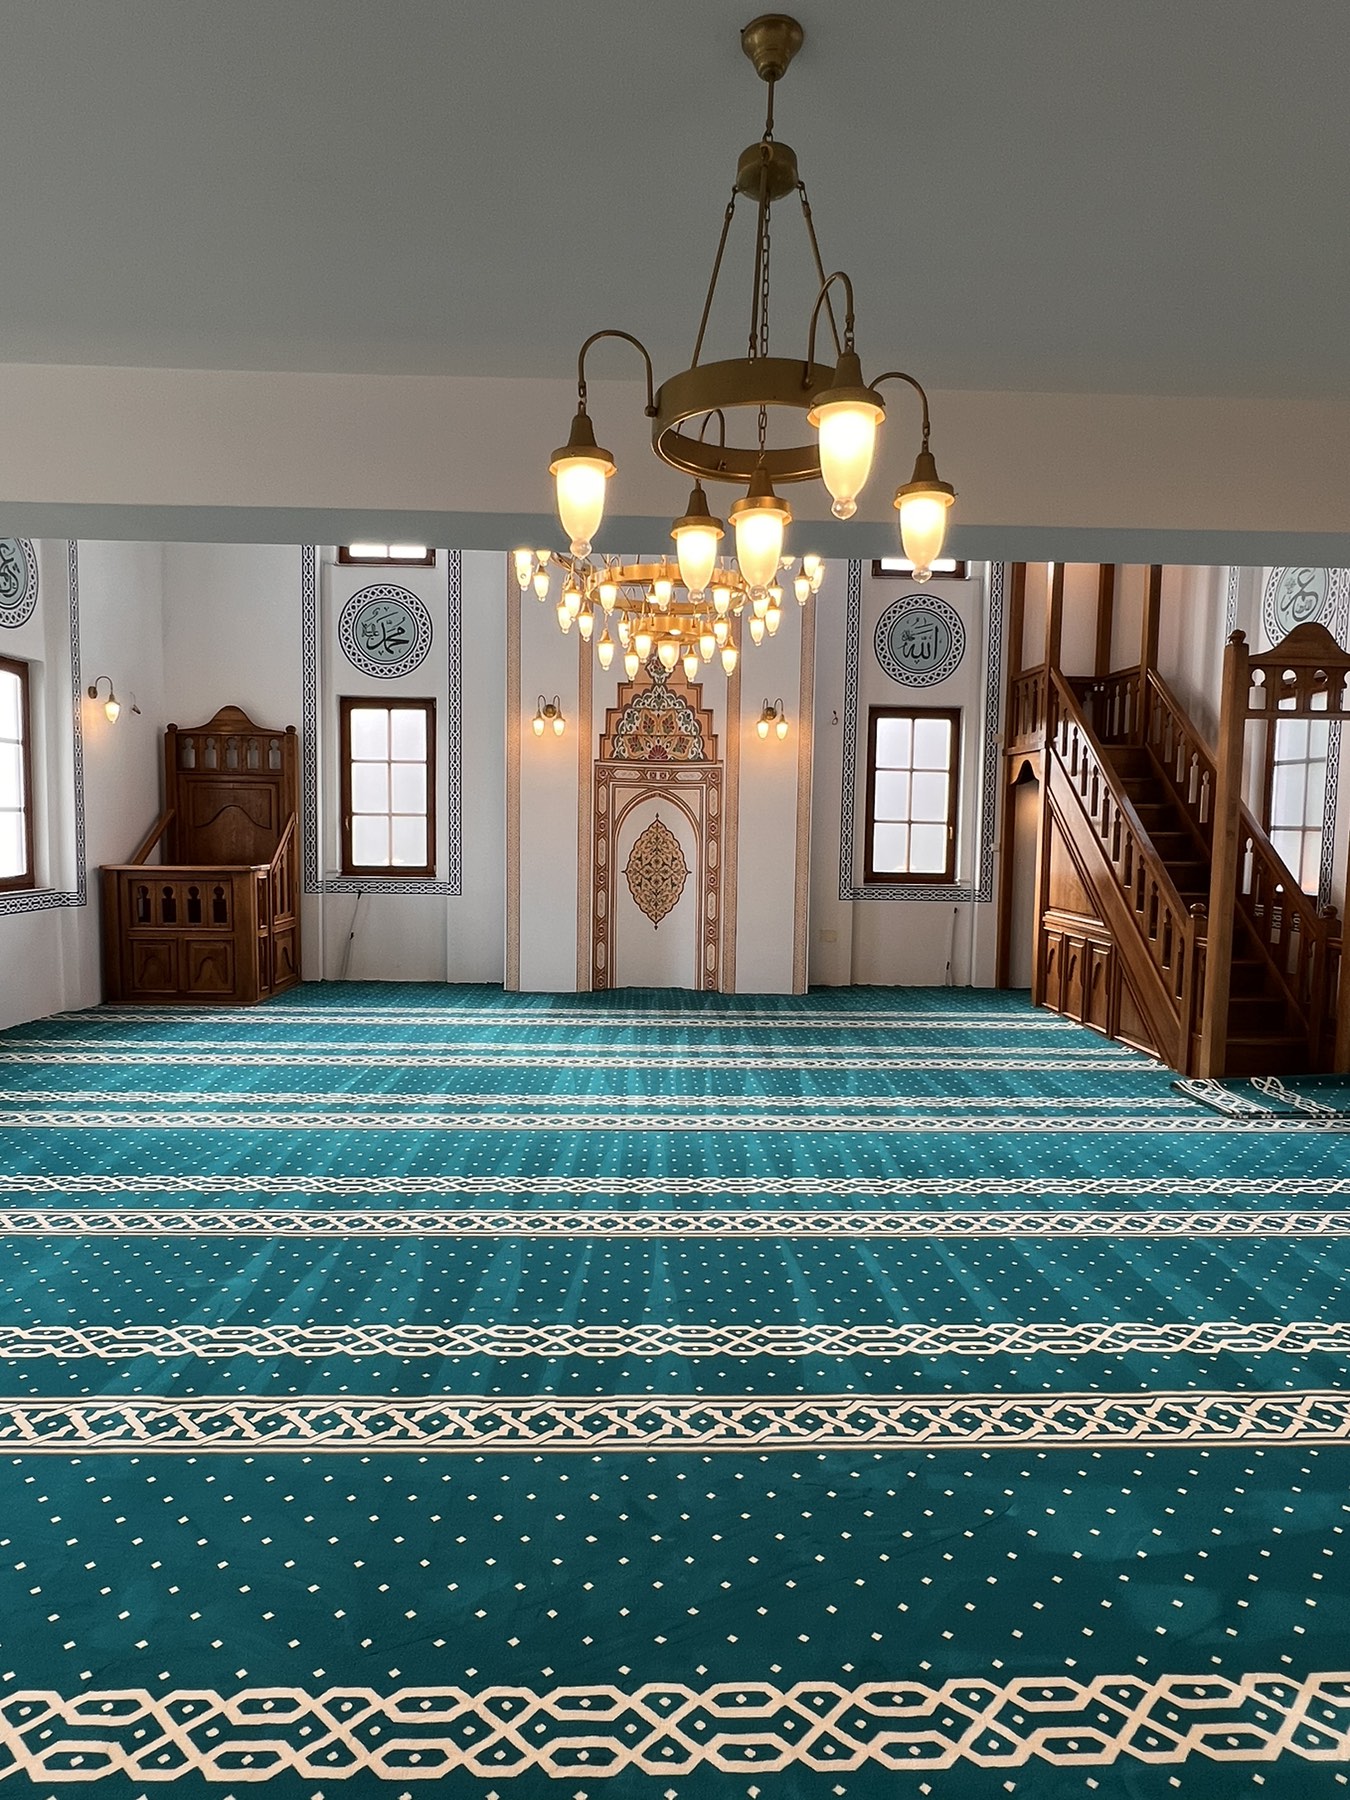 Poštovane džematlije, vakifi i donatori – Izvještaj za Projekat nabavke i ugradnje tepiha i lustera u džamiji Ahmed-age Krpića